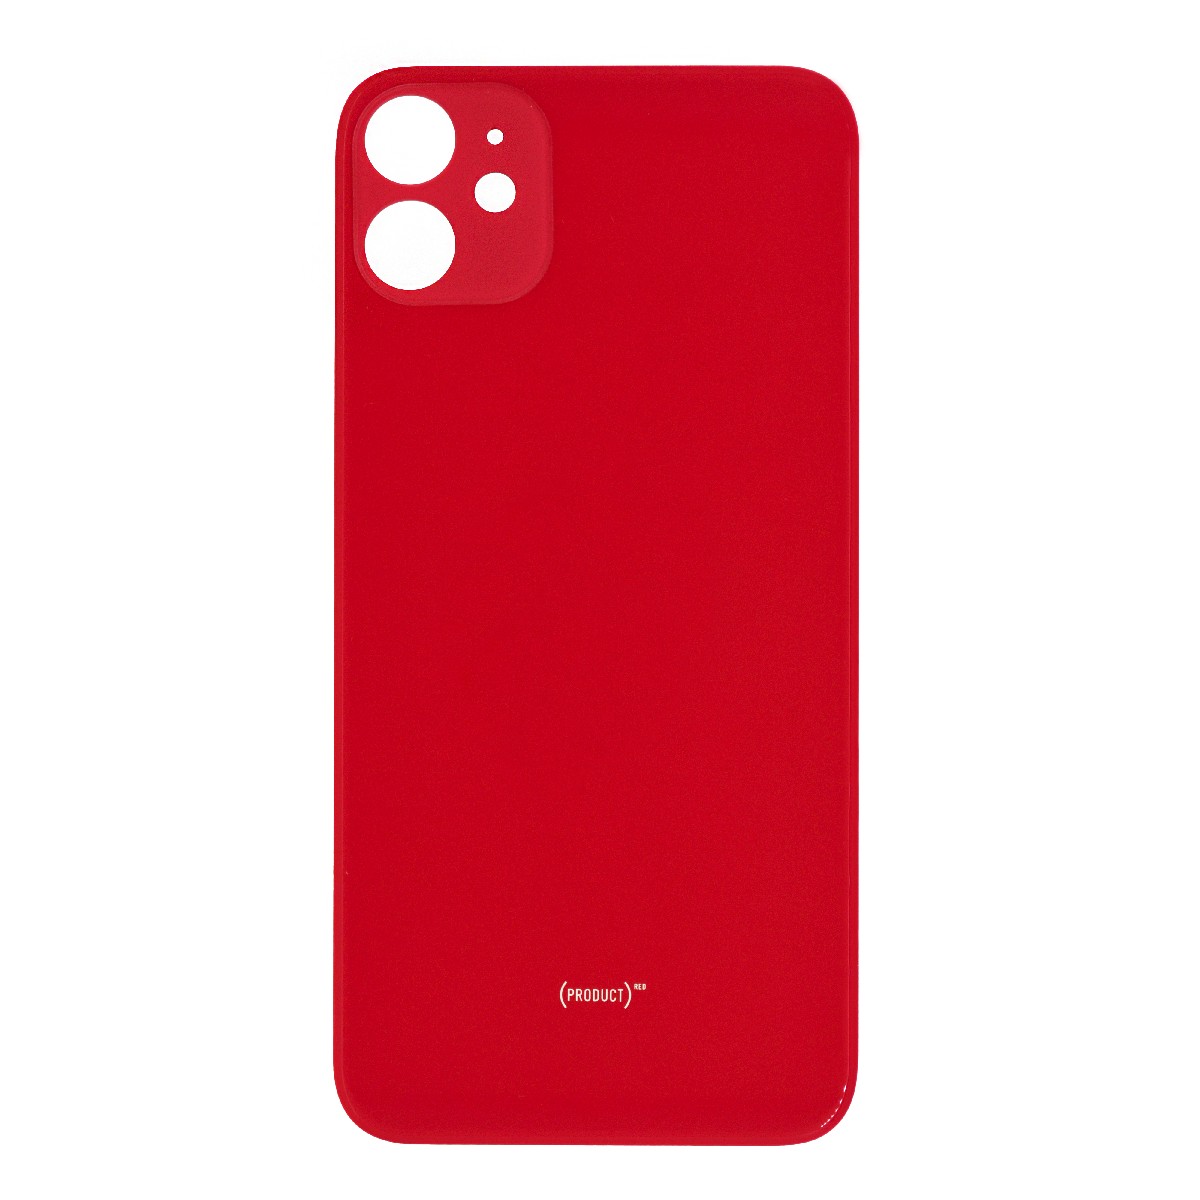 Πίσω Κάλυμμα για Apple iPhone 11 Κόκκινο OEM Type A χωρίς Τζαμάκι Κάμερας